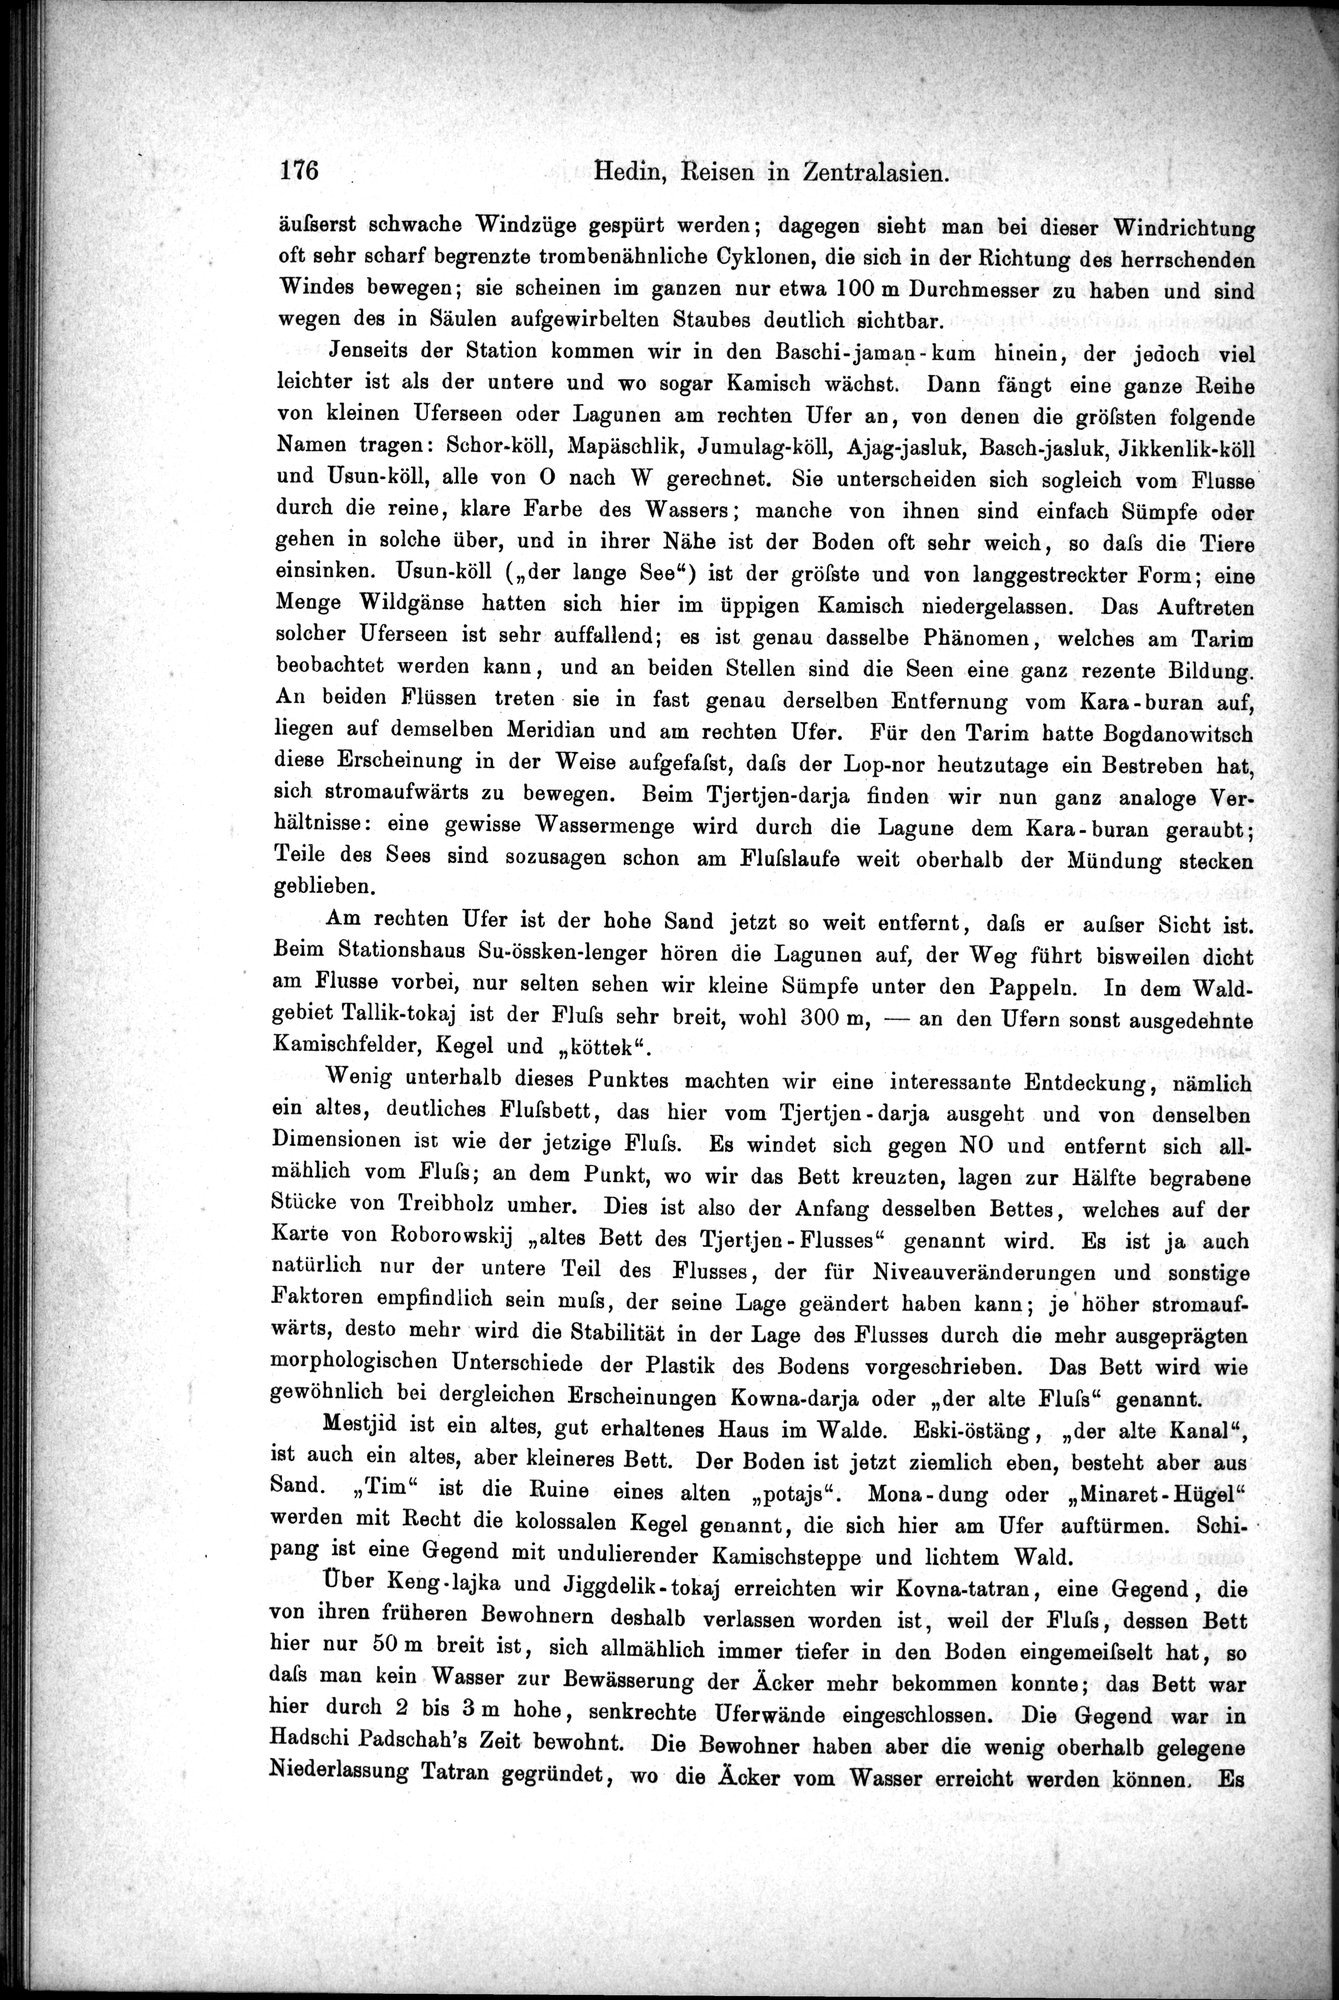 Die Geographische-Wissenschaftlichen Ergebnisse meiner Reisen in Zentralasien, 1894-1897 : vol.1 / Page 188 (Grayscale High Resolution Image)